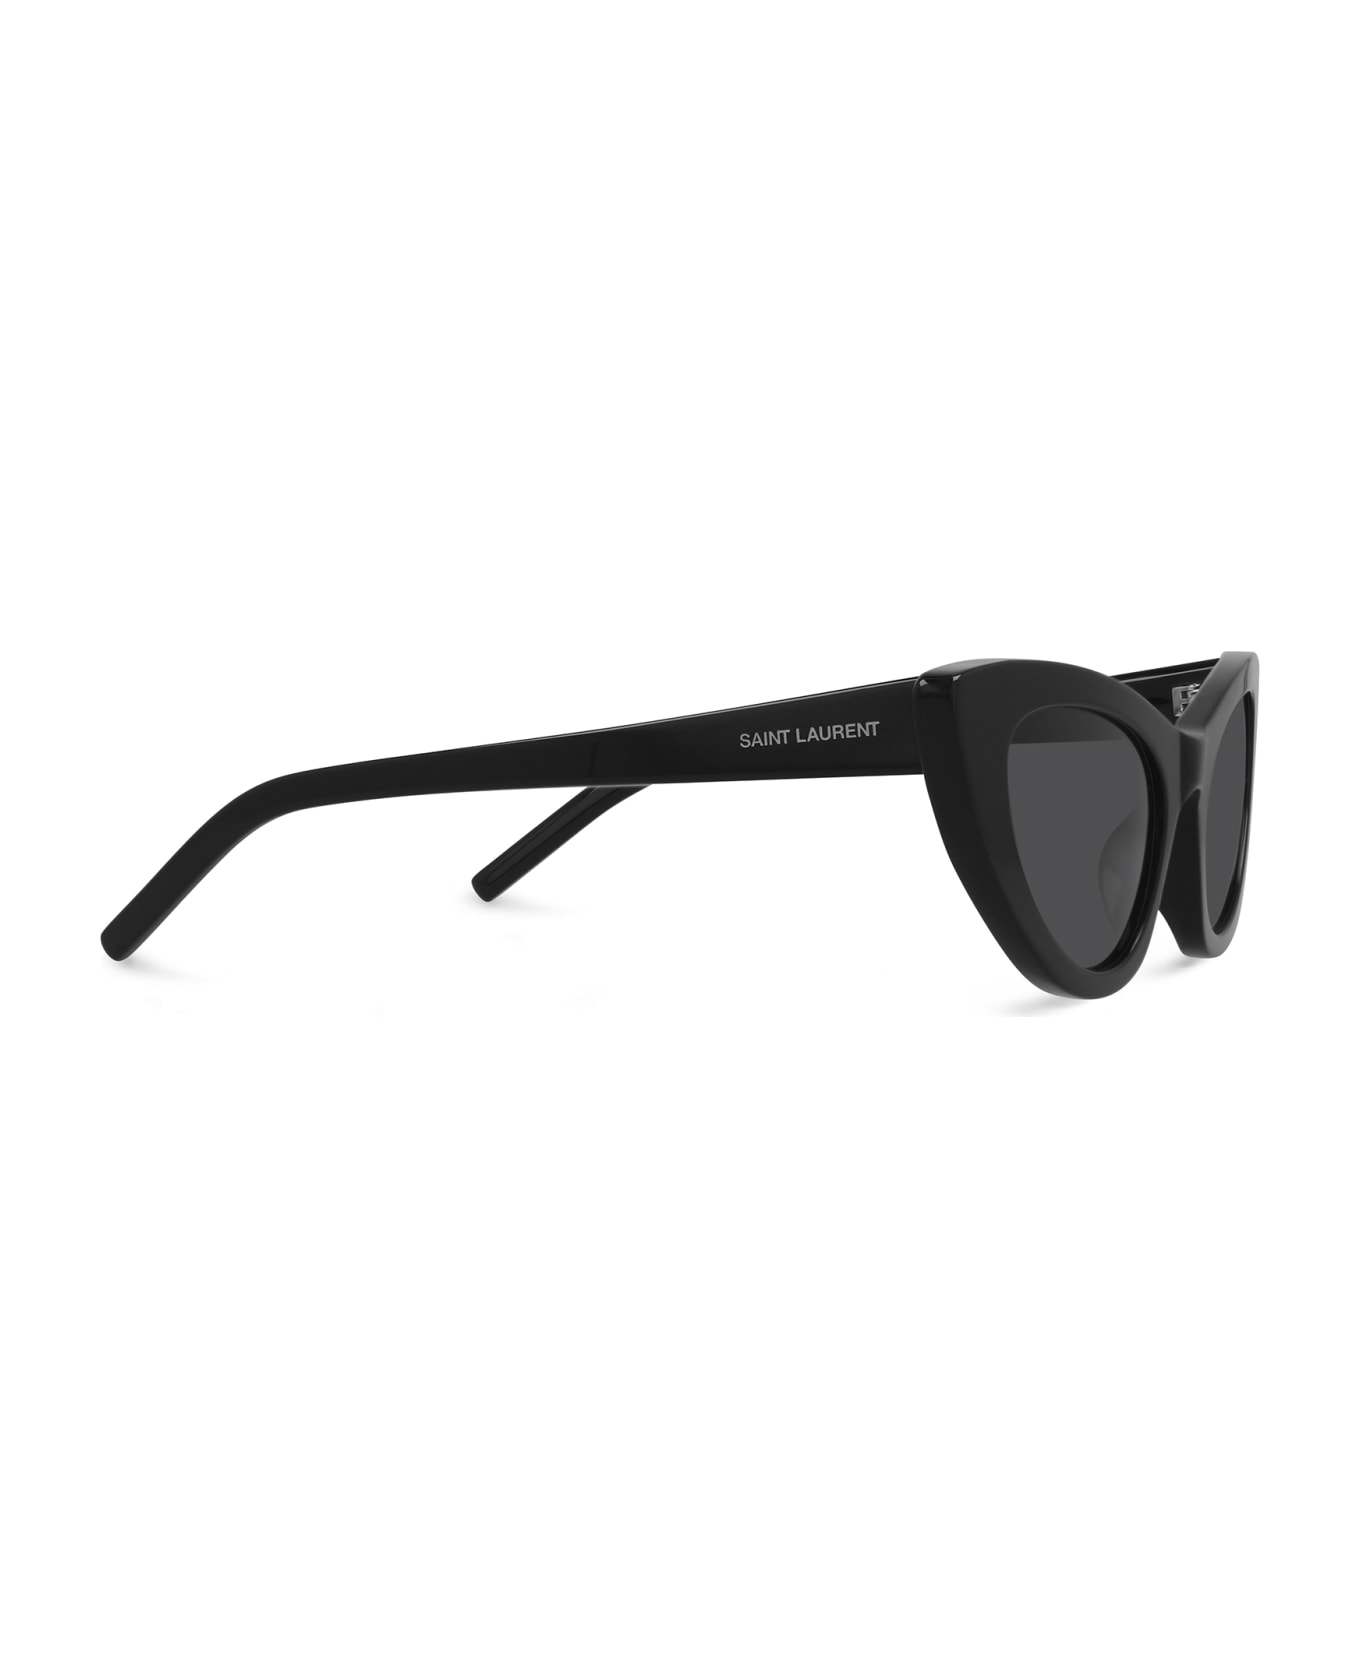 Saint Laurent Eyewear Sl 213 Black Sunglasses - Black サングラス